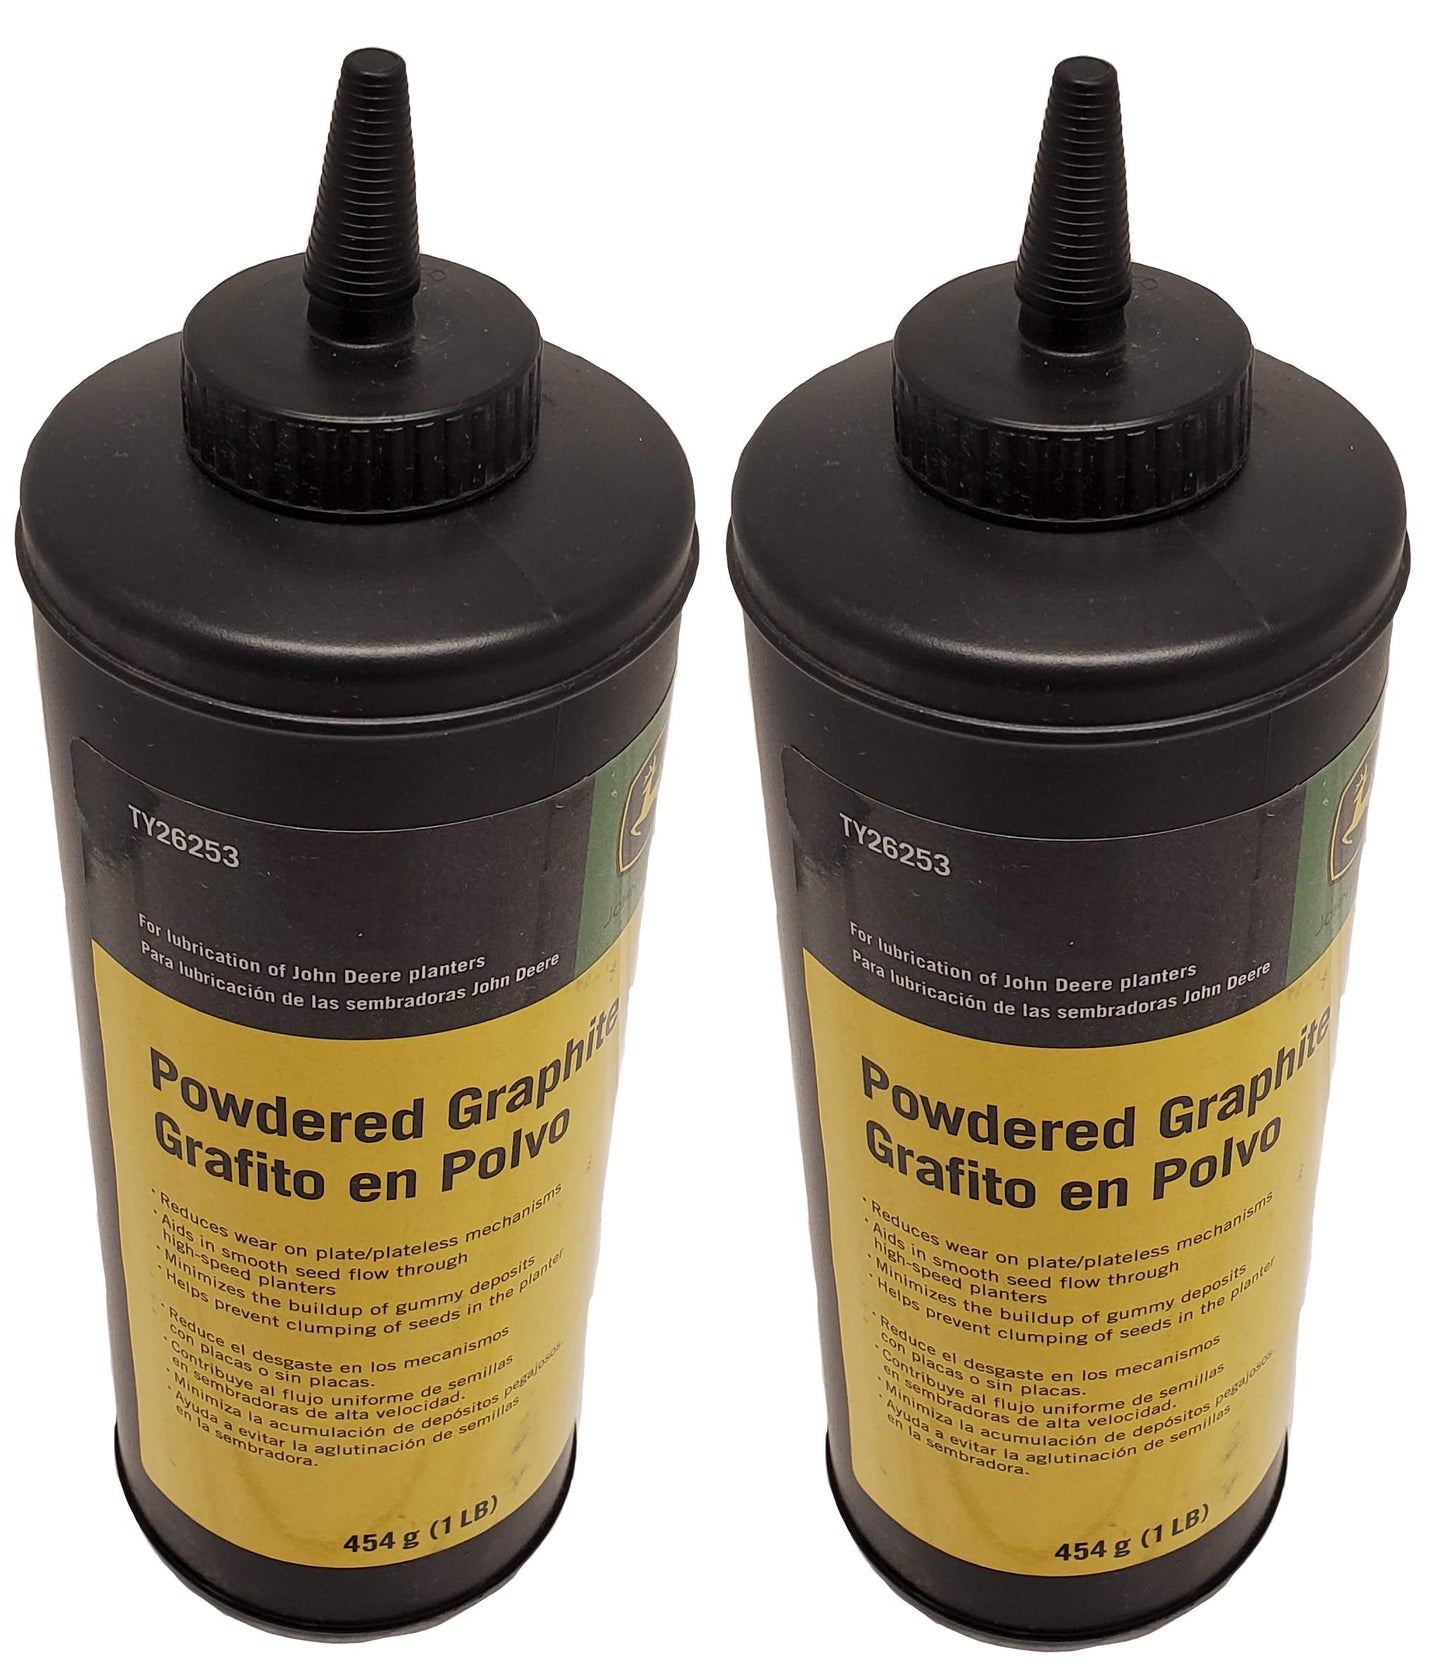 John Deere Original Equipment Powdered Graphite (Set of 2) - TY26253,2 –